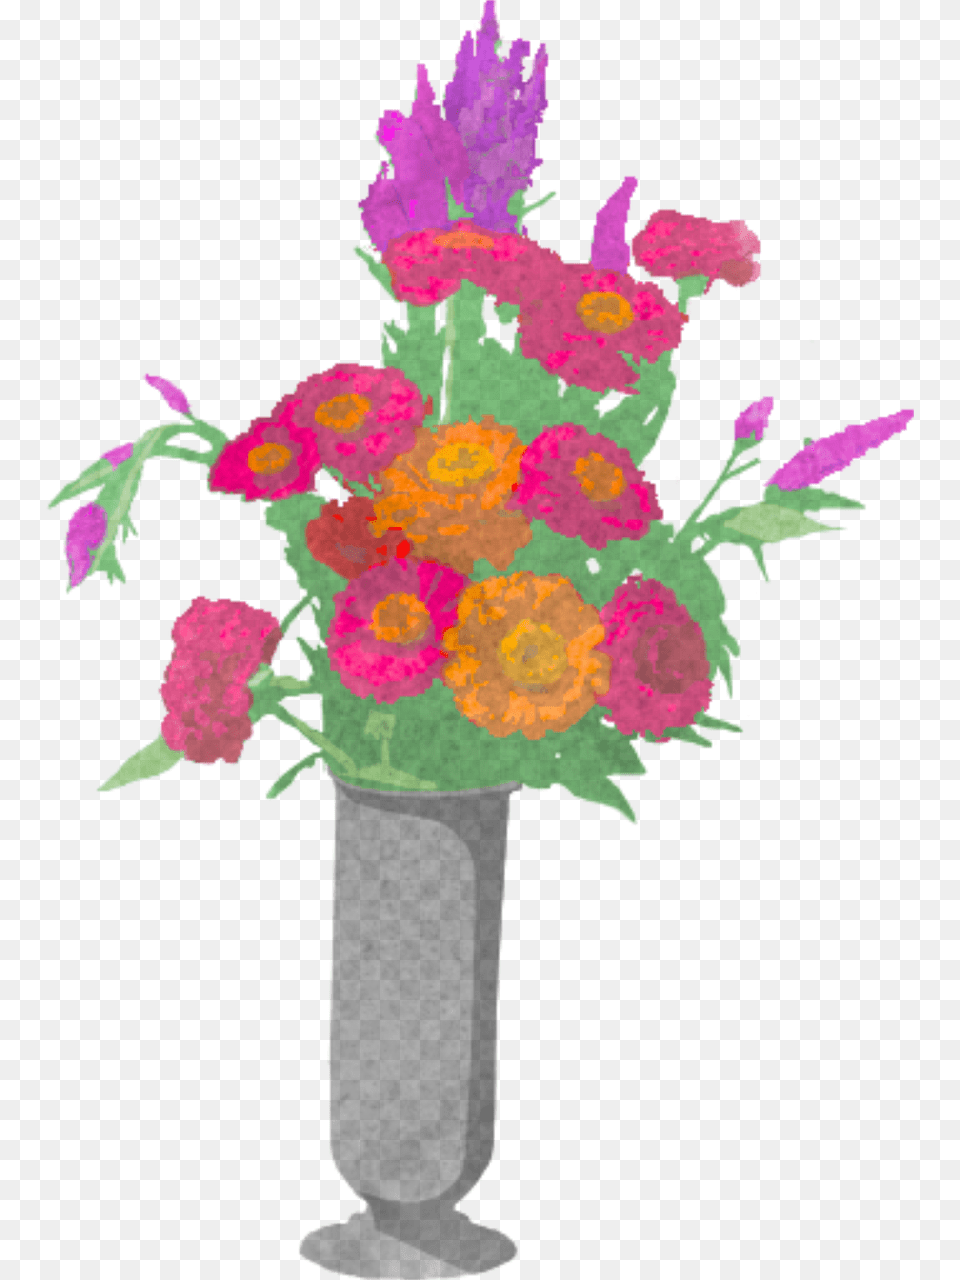 Bouquet Flowers Funeral Bouquet, Art, Floral Design, Flower, Flower Arrangement Png Image